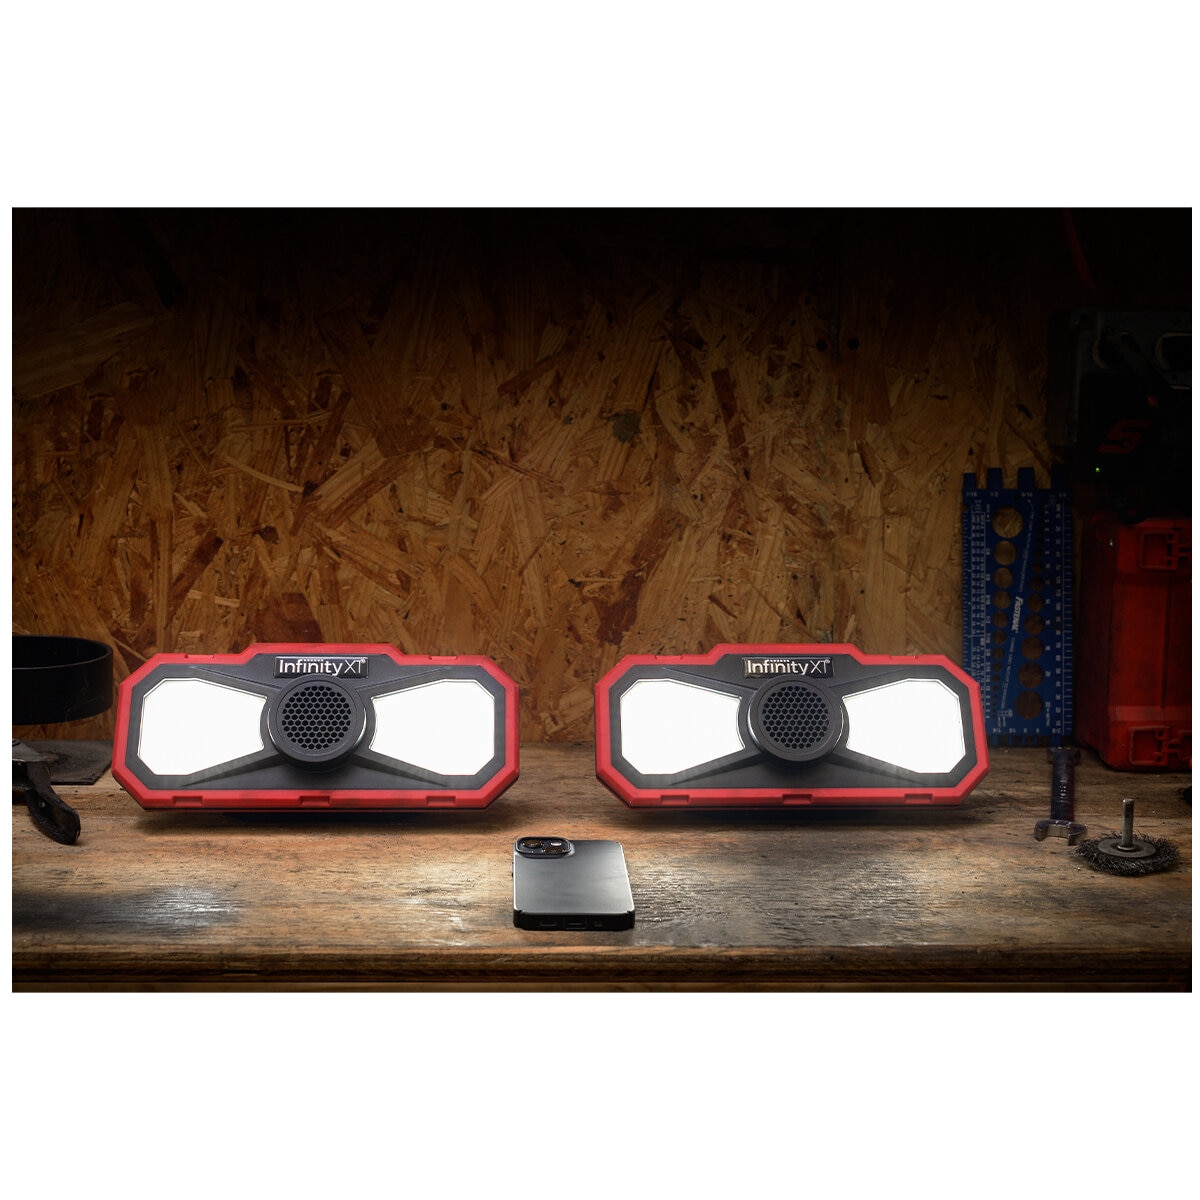 Hoodie Underhood Worklight with Bluetooth Speakers